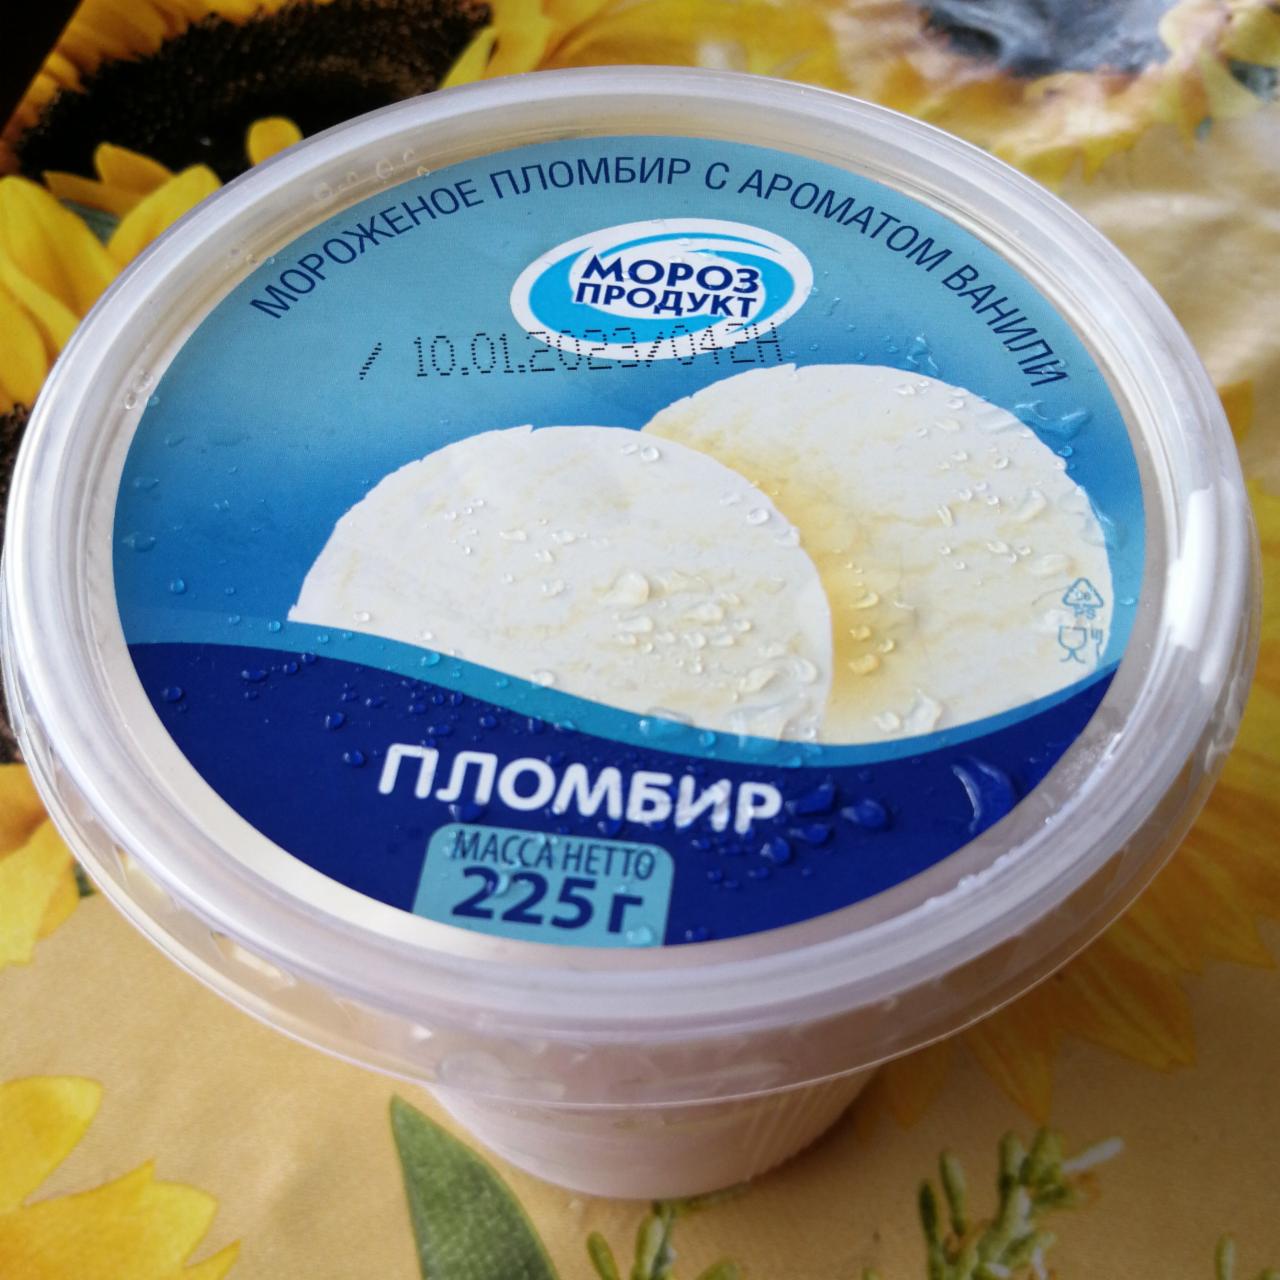 Фото - Мороженное пломбир с ароматом ванили МорозПродукт